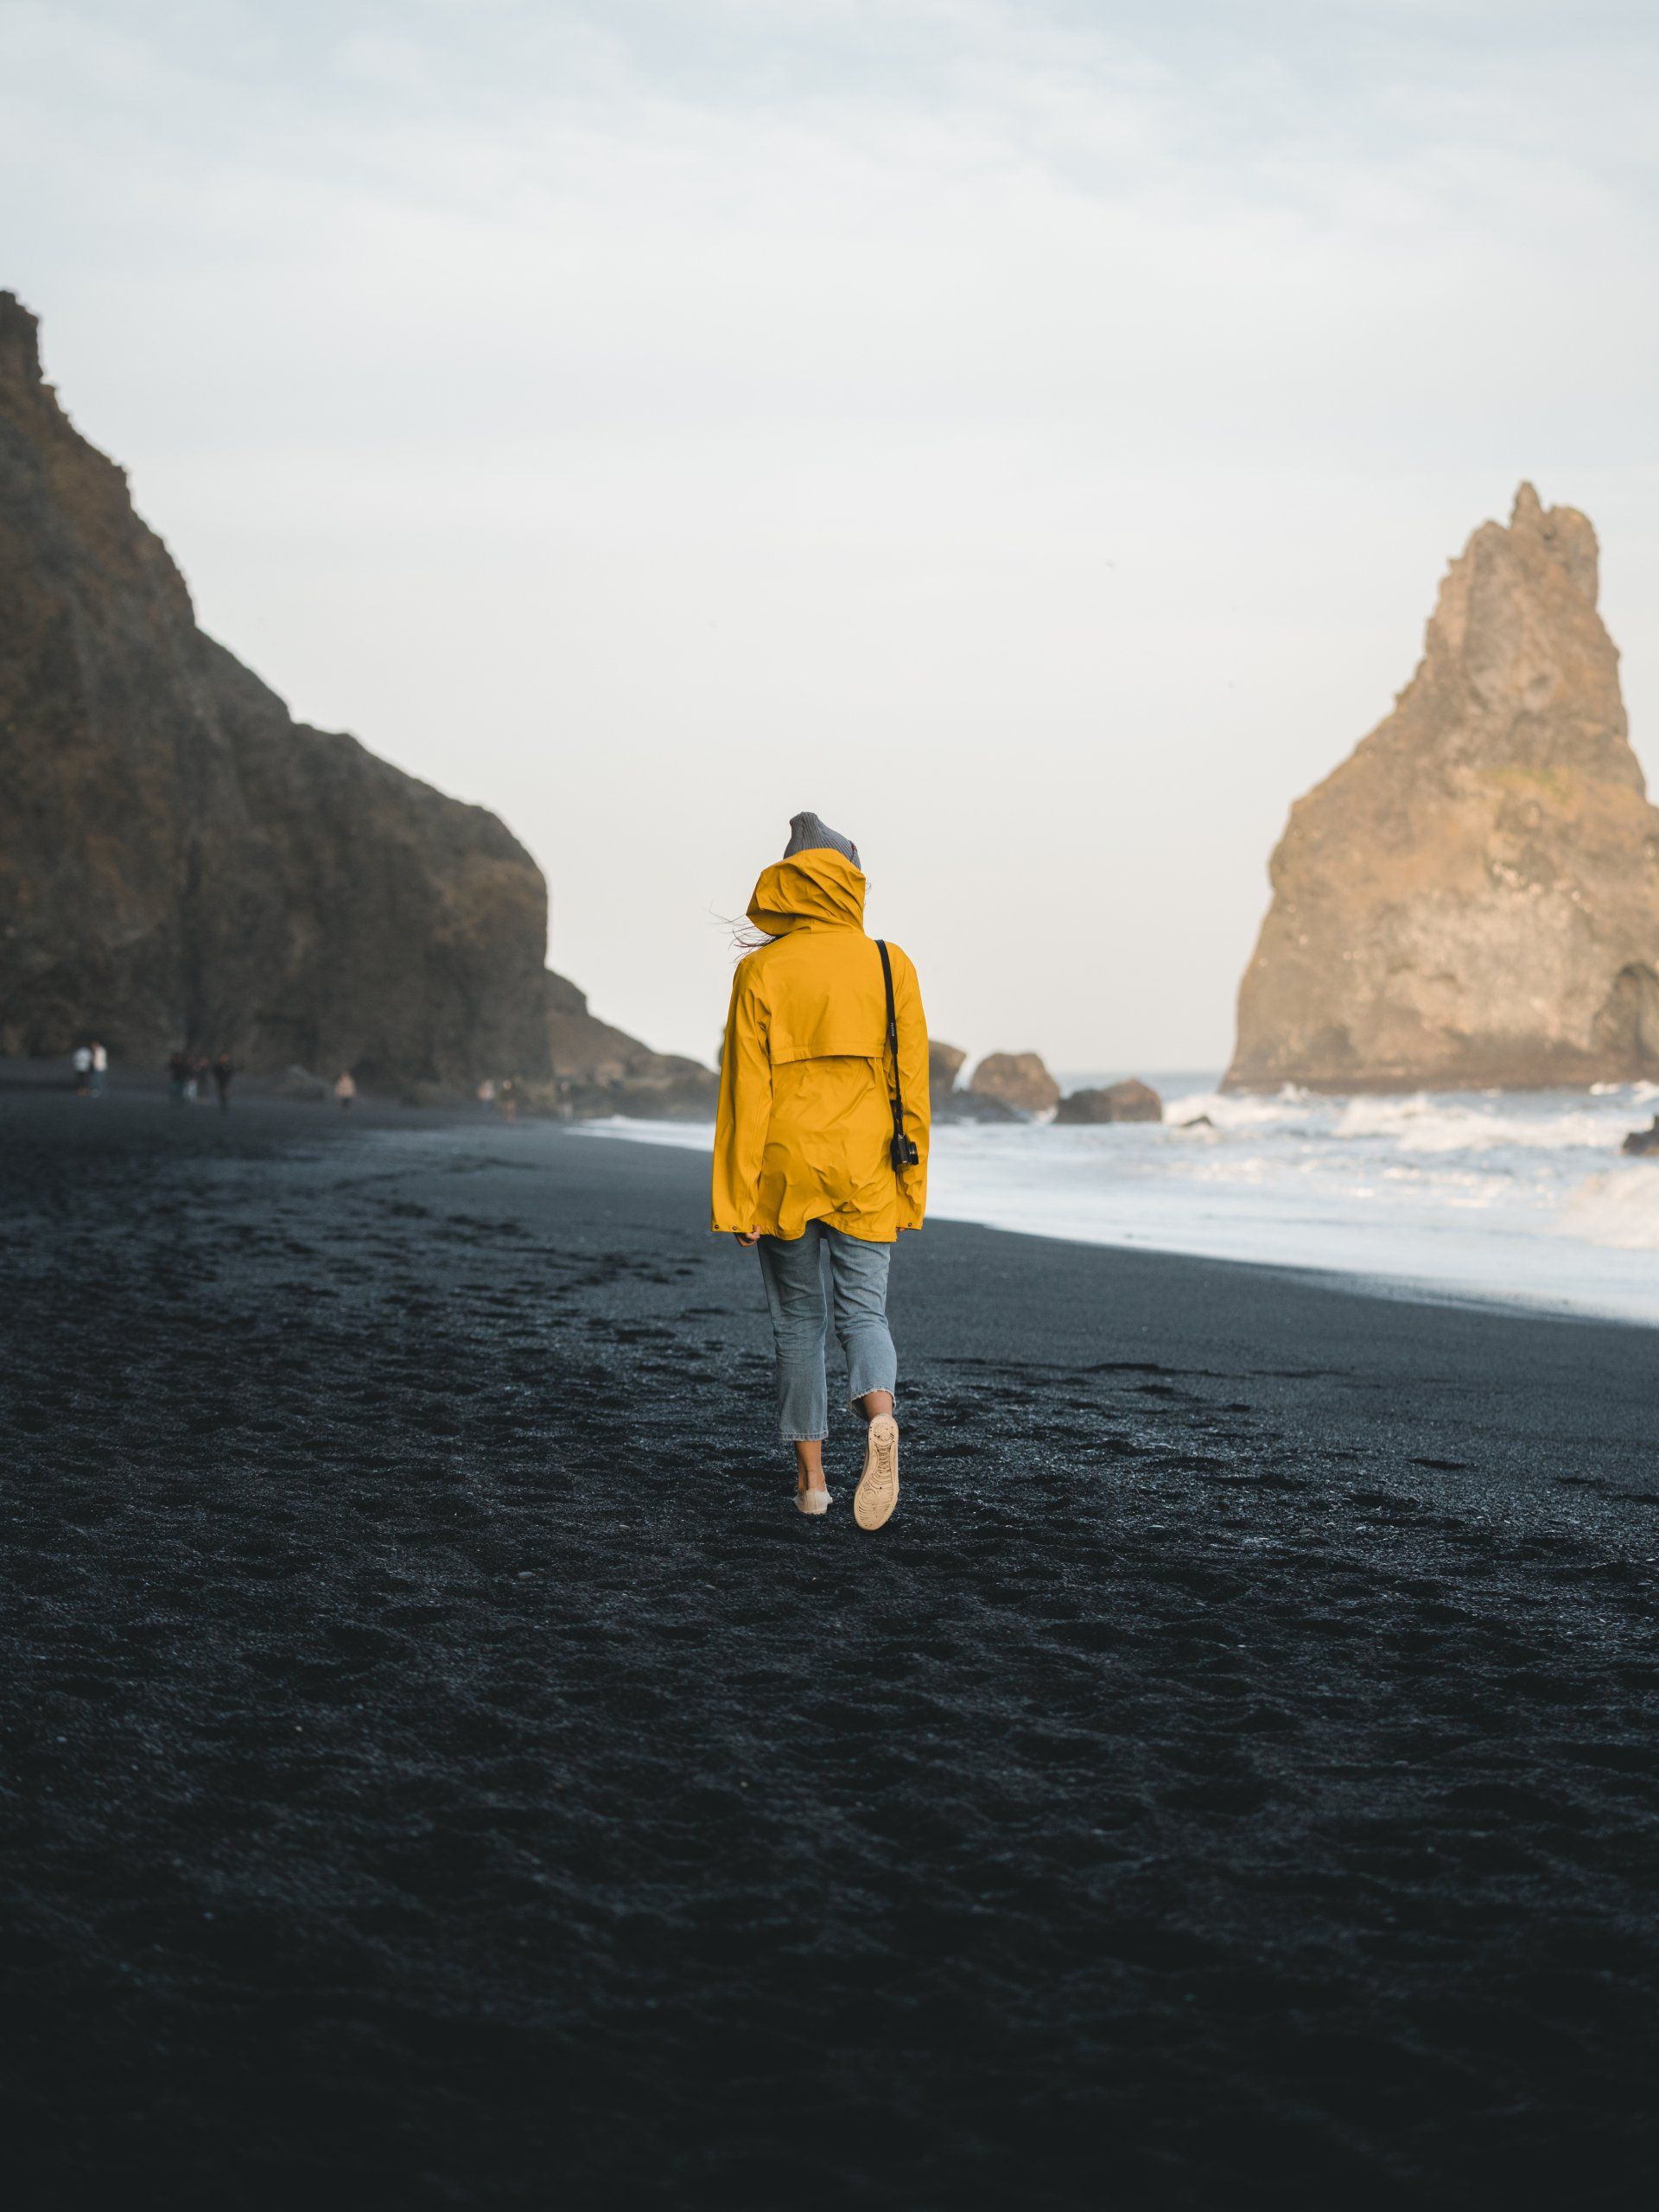 Lady walking on an empty beach 